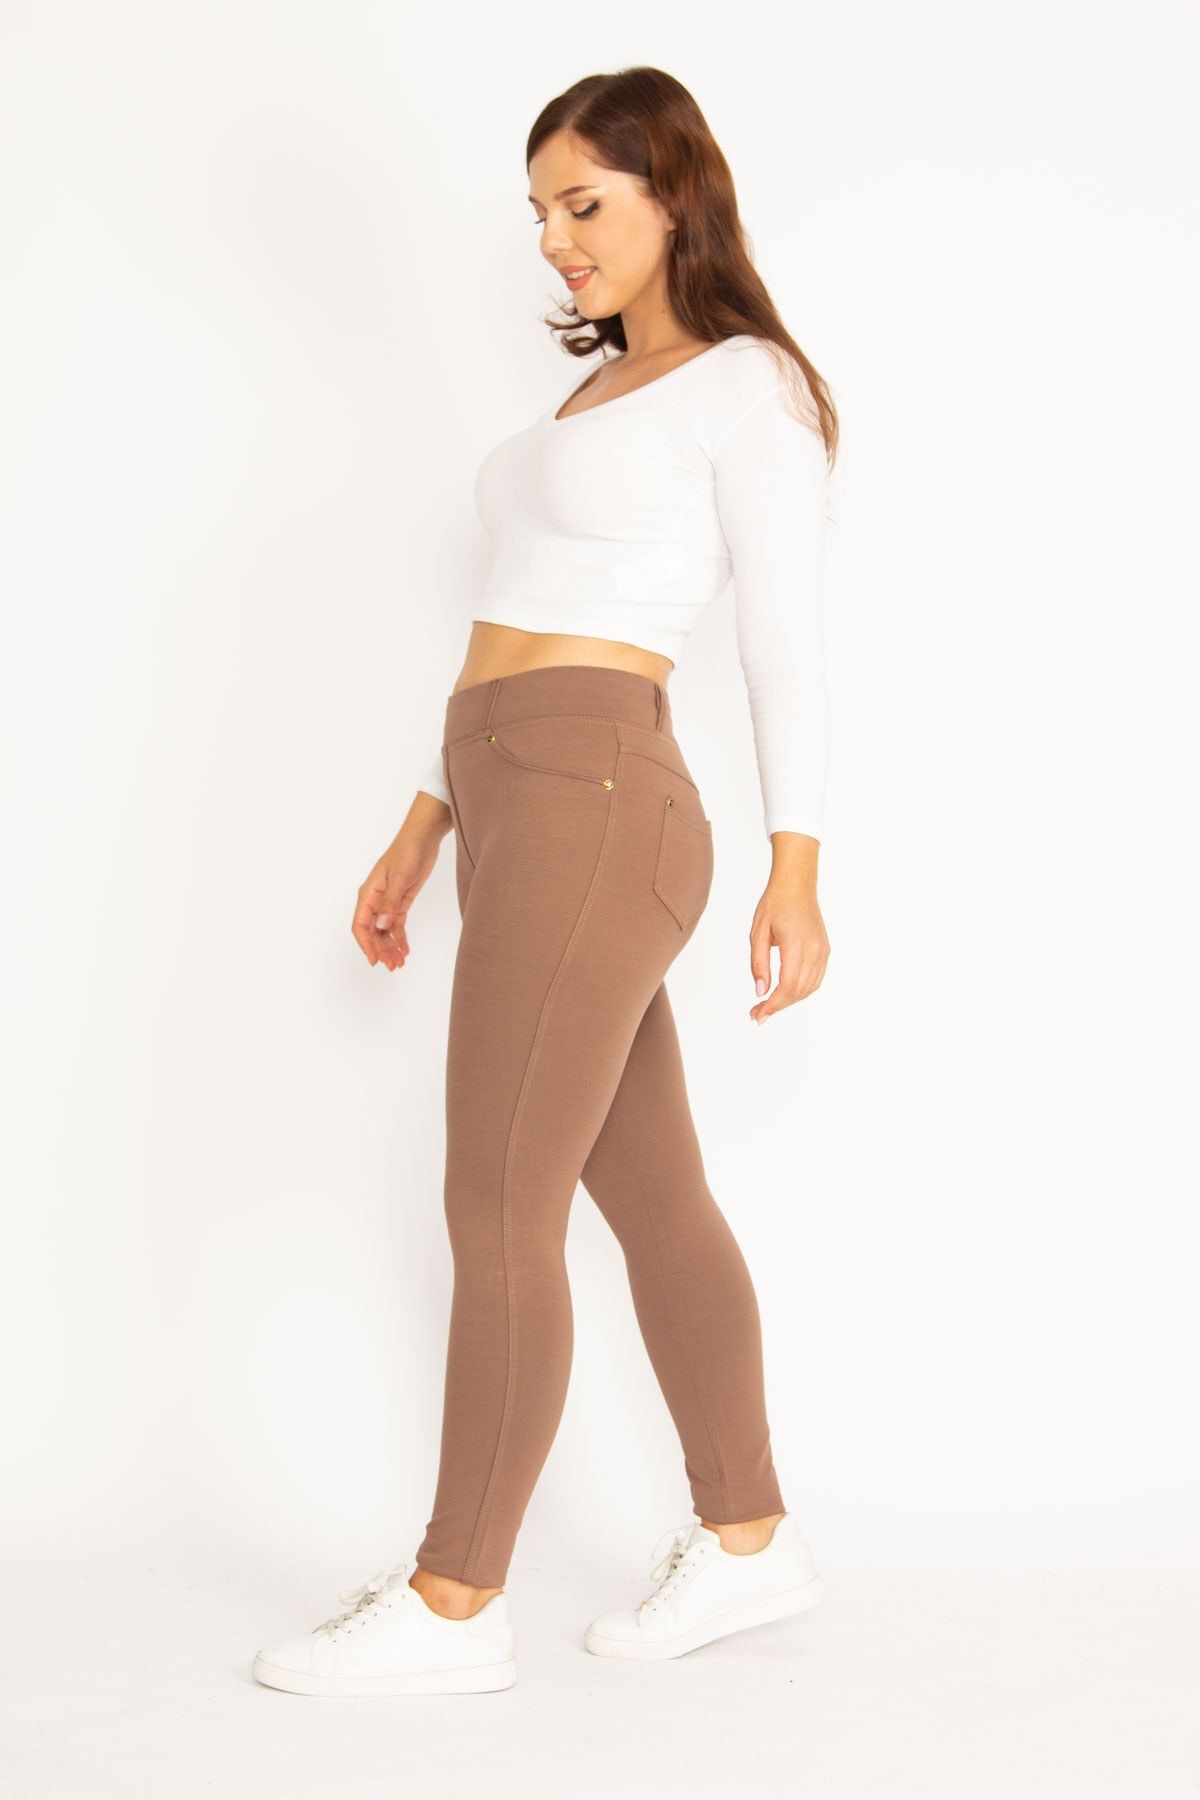 Şans Women's Large Size Mink Leggings with Front Decoration and Back Pocket  65n34812 - Trendyol